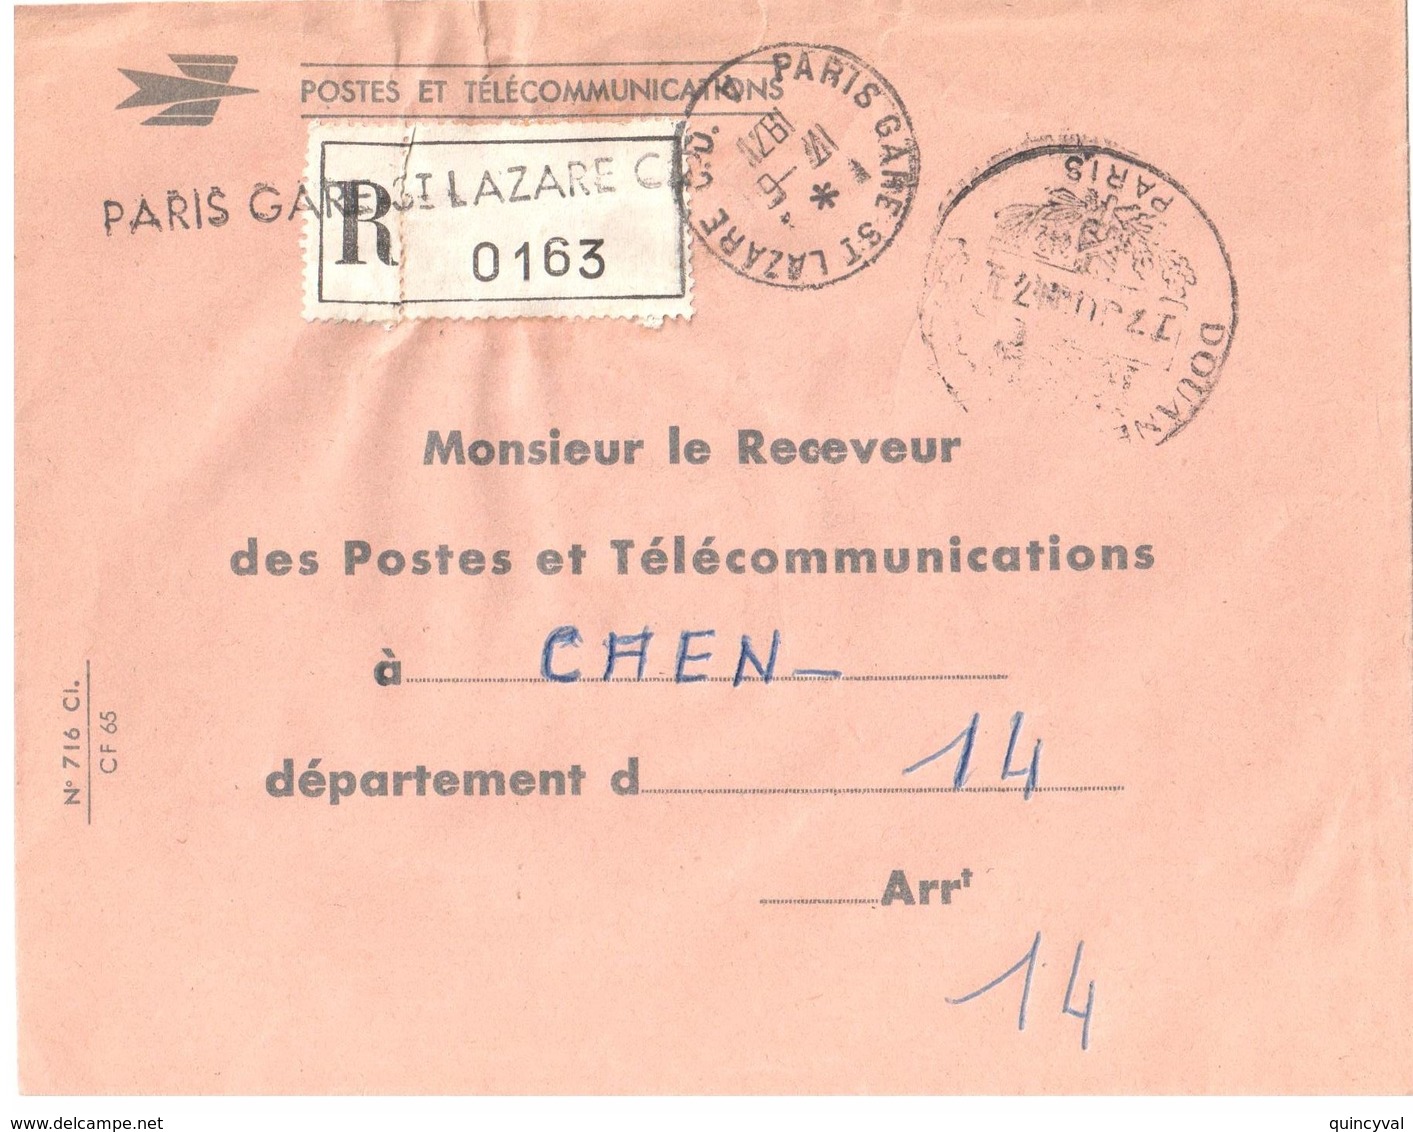 PARIS St LAZARE CD 17 6 1971 Lettre Recommandée En Franchise Dest Receveur Caen Marque Au Tampon DOUANE Paris - Covers & Documents